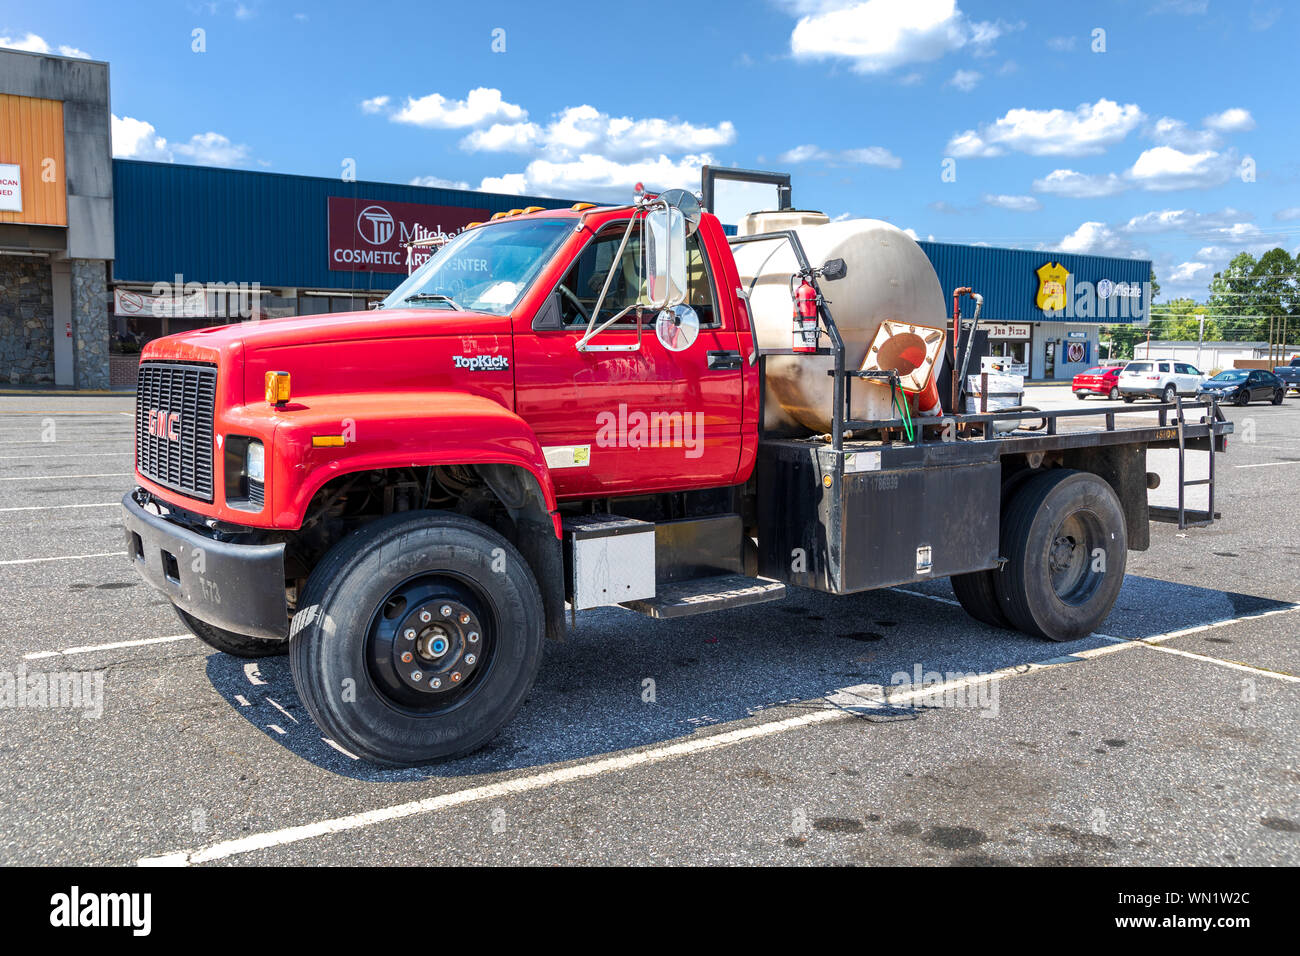 STATESVILLE, NC, USA-1 septembre 2019 : un rouge lumineux, pick-up GMC camion de travail à plat, avec un réservoir de stockage de liquides sur le lit. Banque D'Images